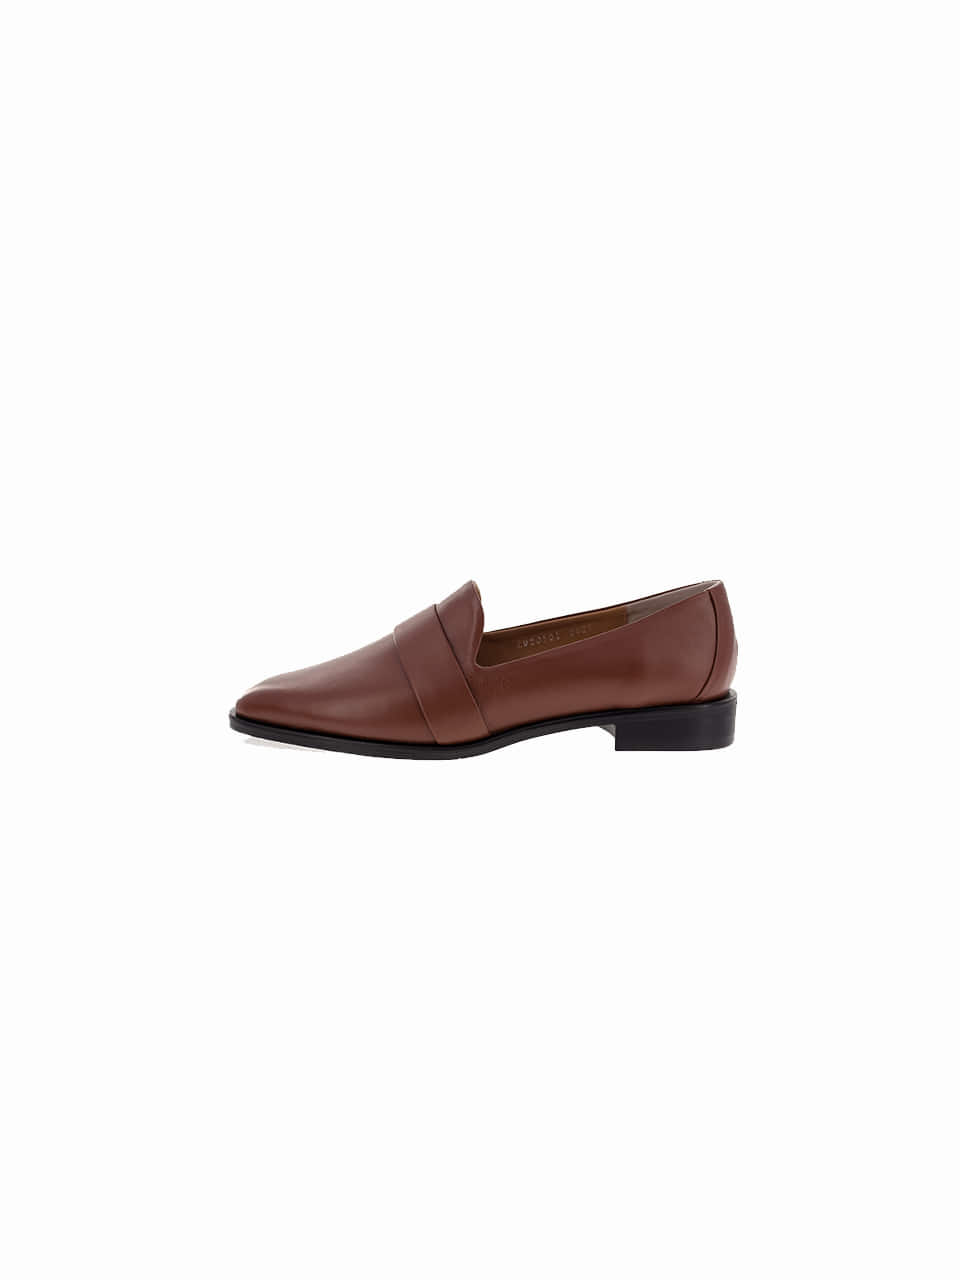 [스크래치샘플2차]new loafer ver shoes_brown_20501